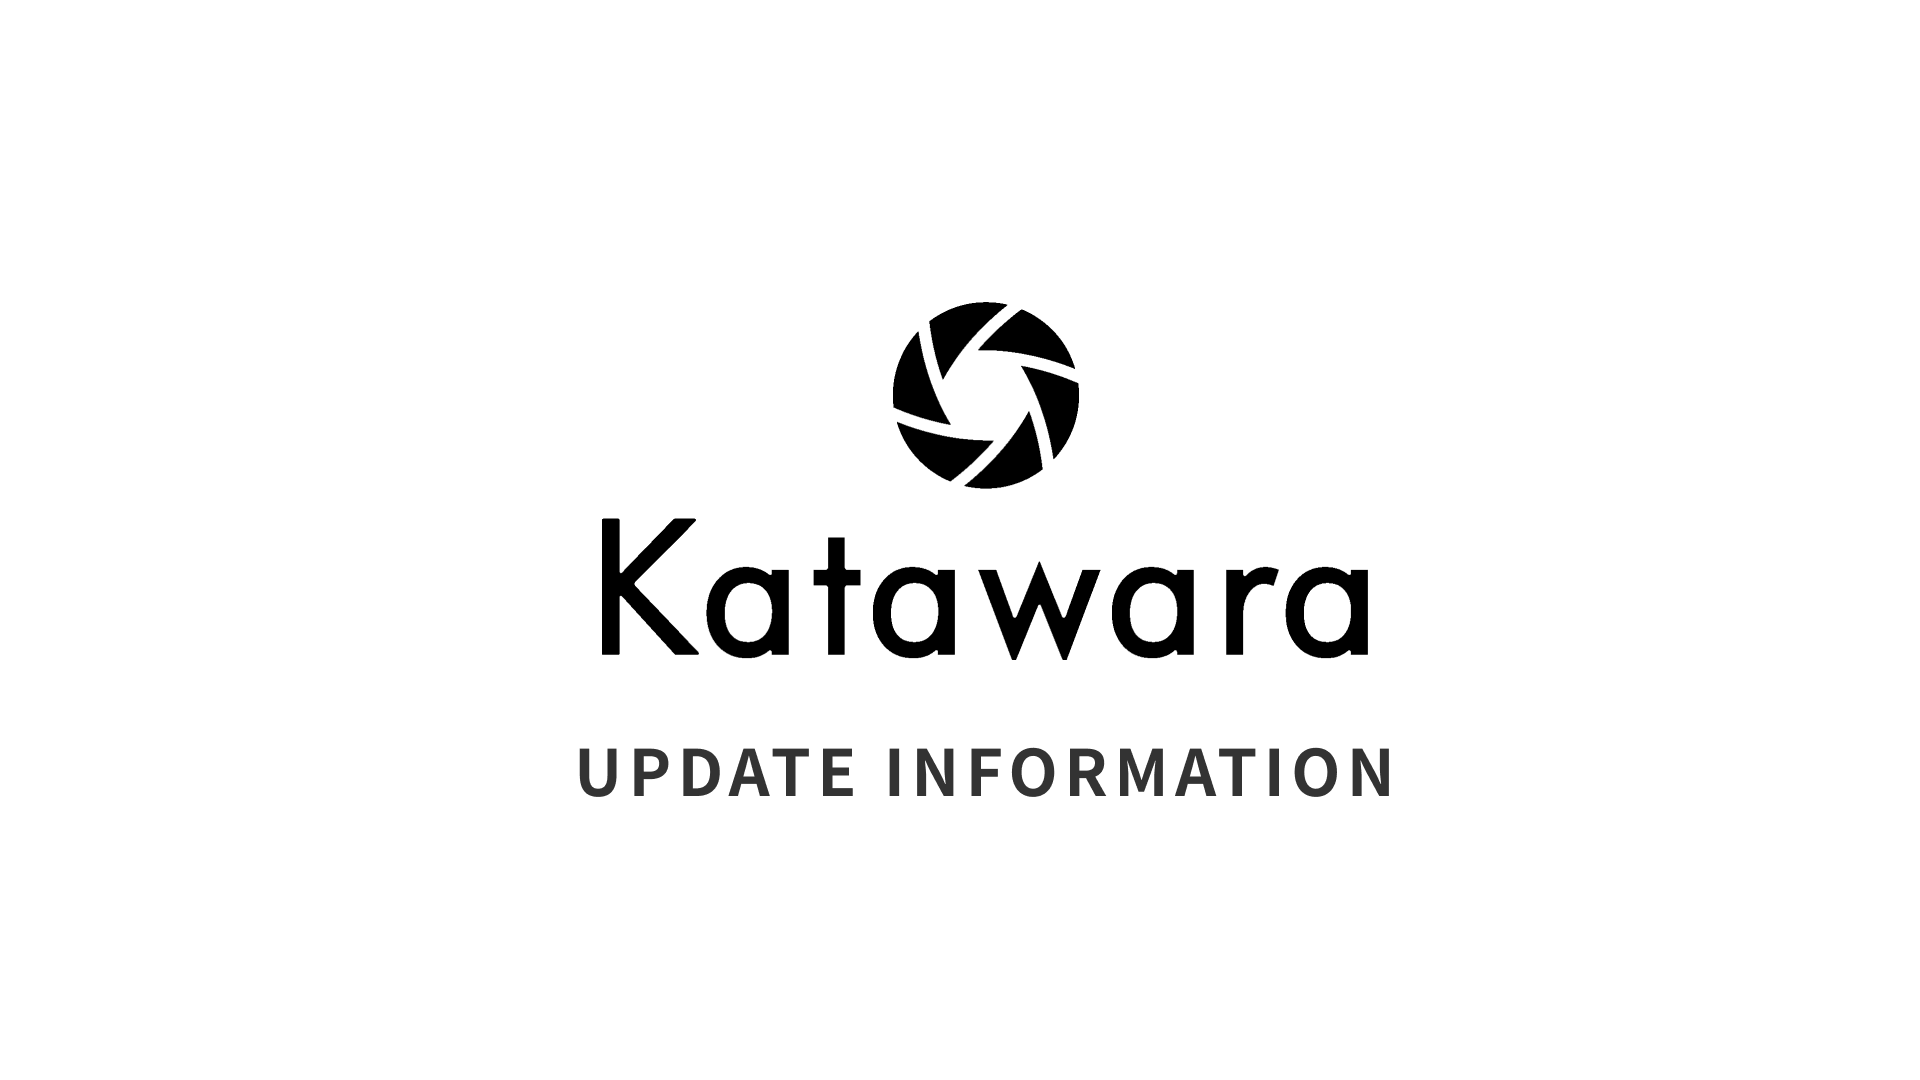 Katawara Update Information